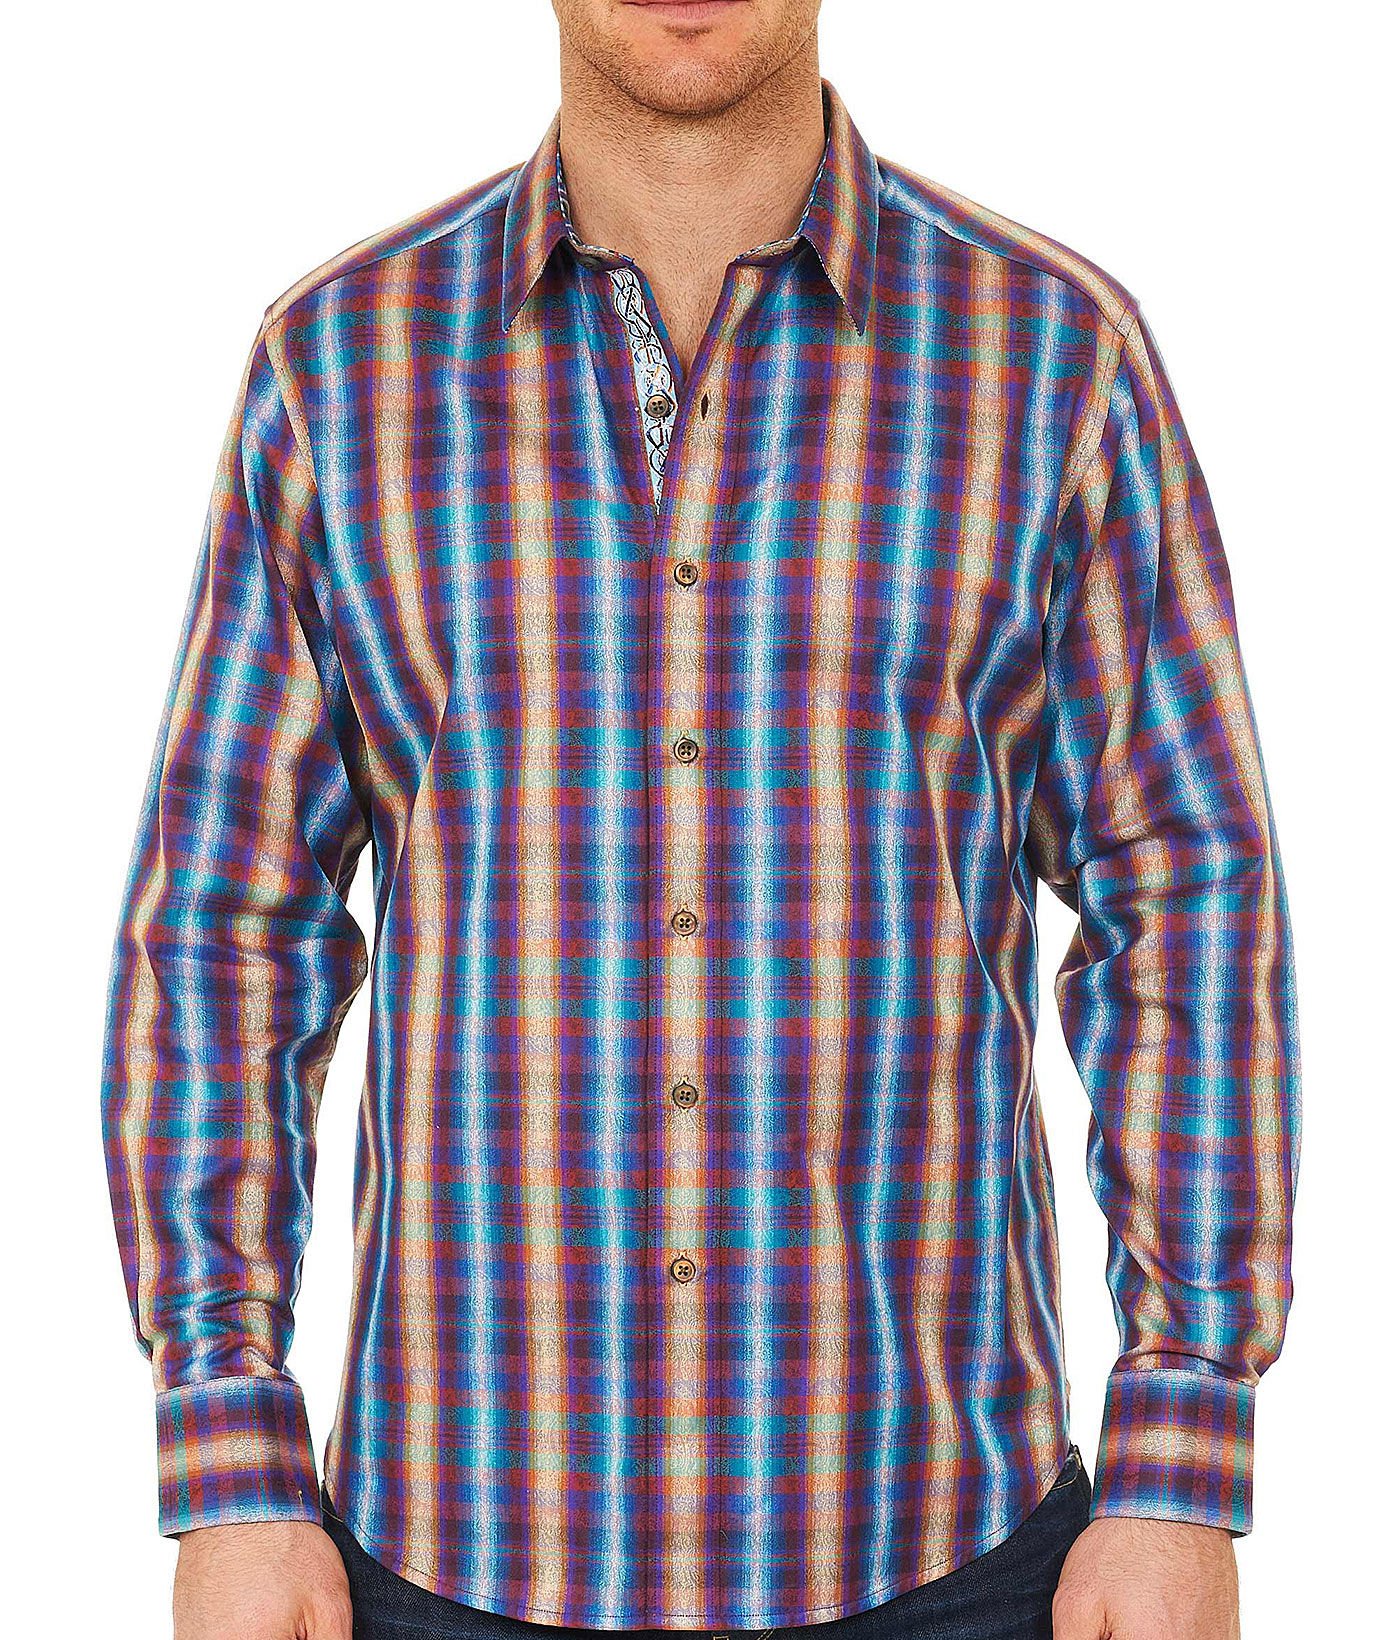 Robert Graham Men's Chiswick Long Sleeve Button-Down Shirt